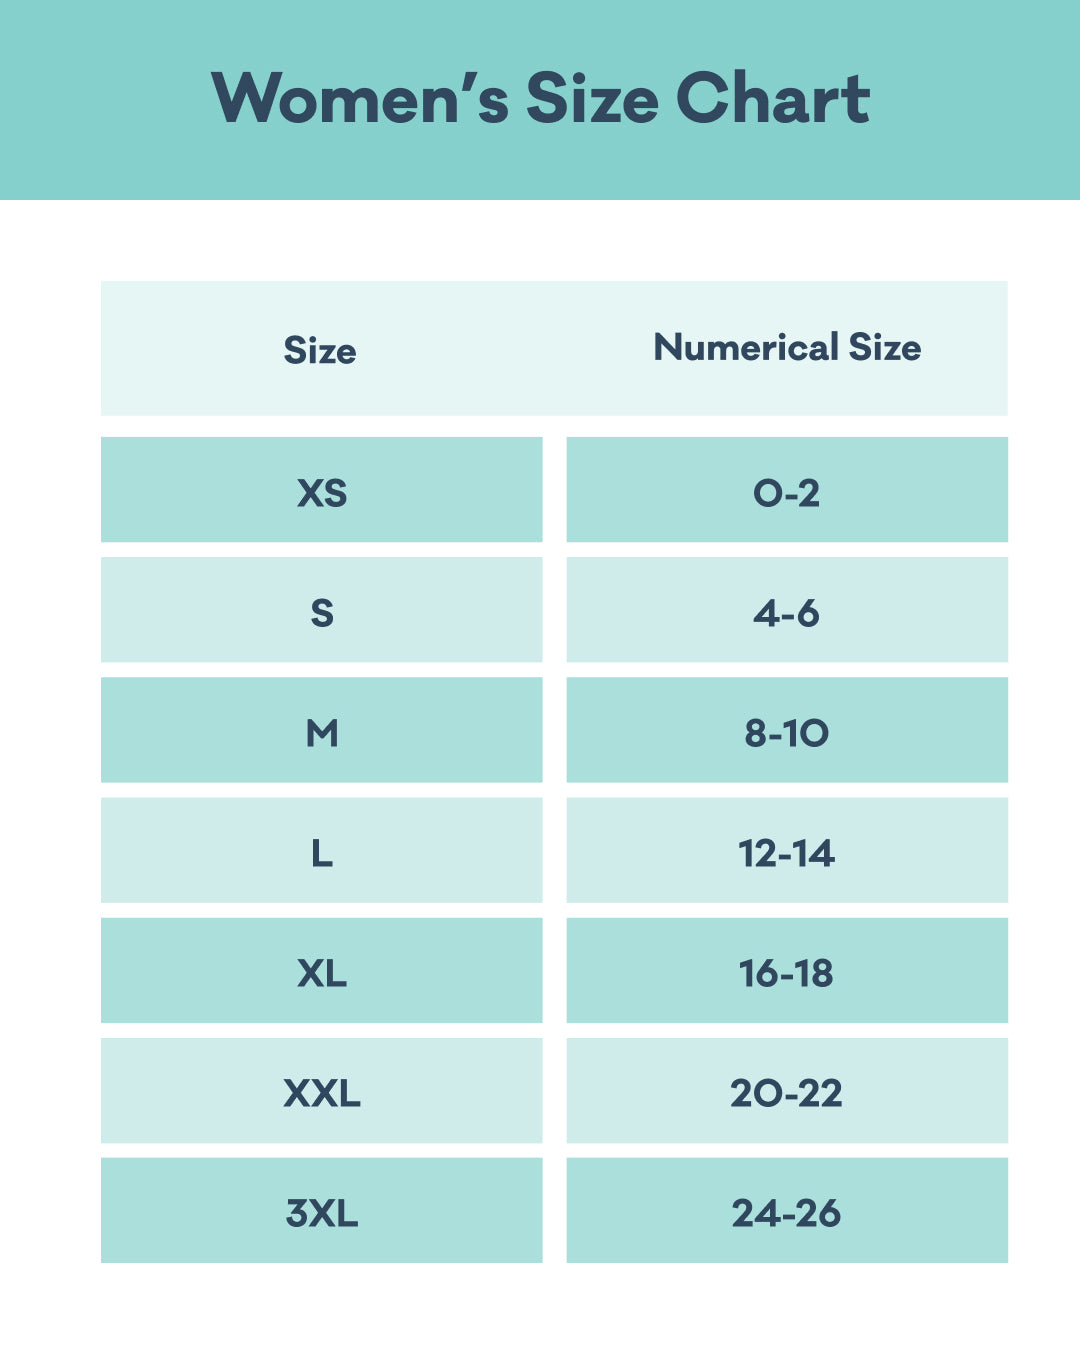 Women's Size Chart: XS (0-2); S (4-6); M (8-10); L (12-14); XL (16-18); XXL (20-22); 3XL (24-26)